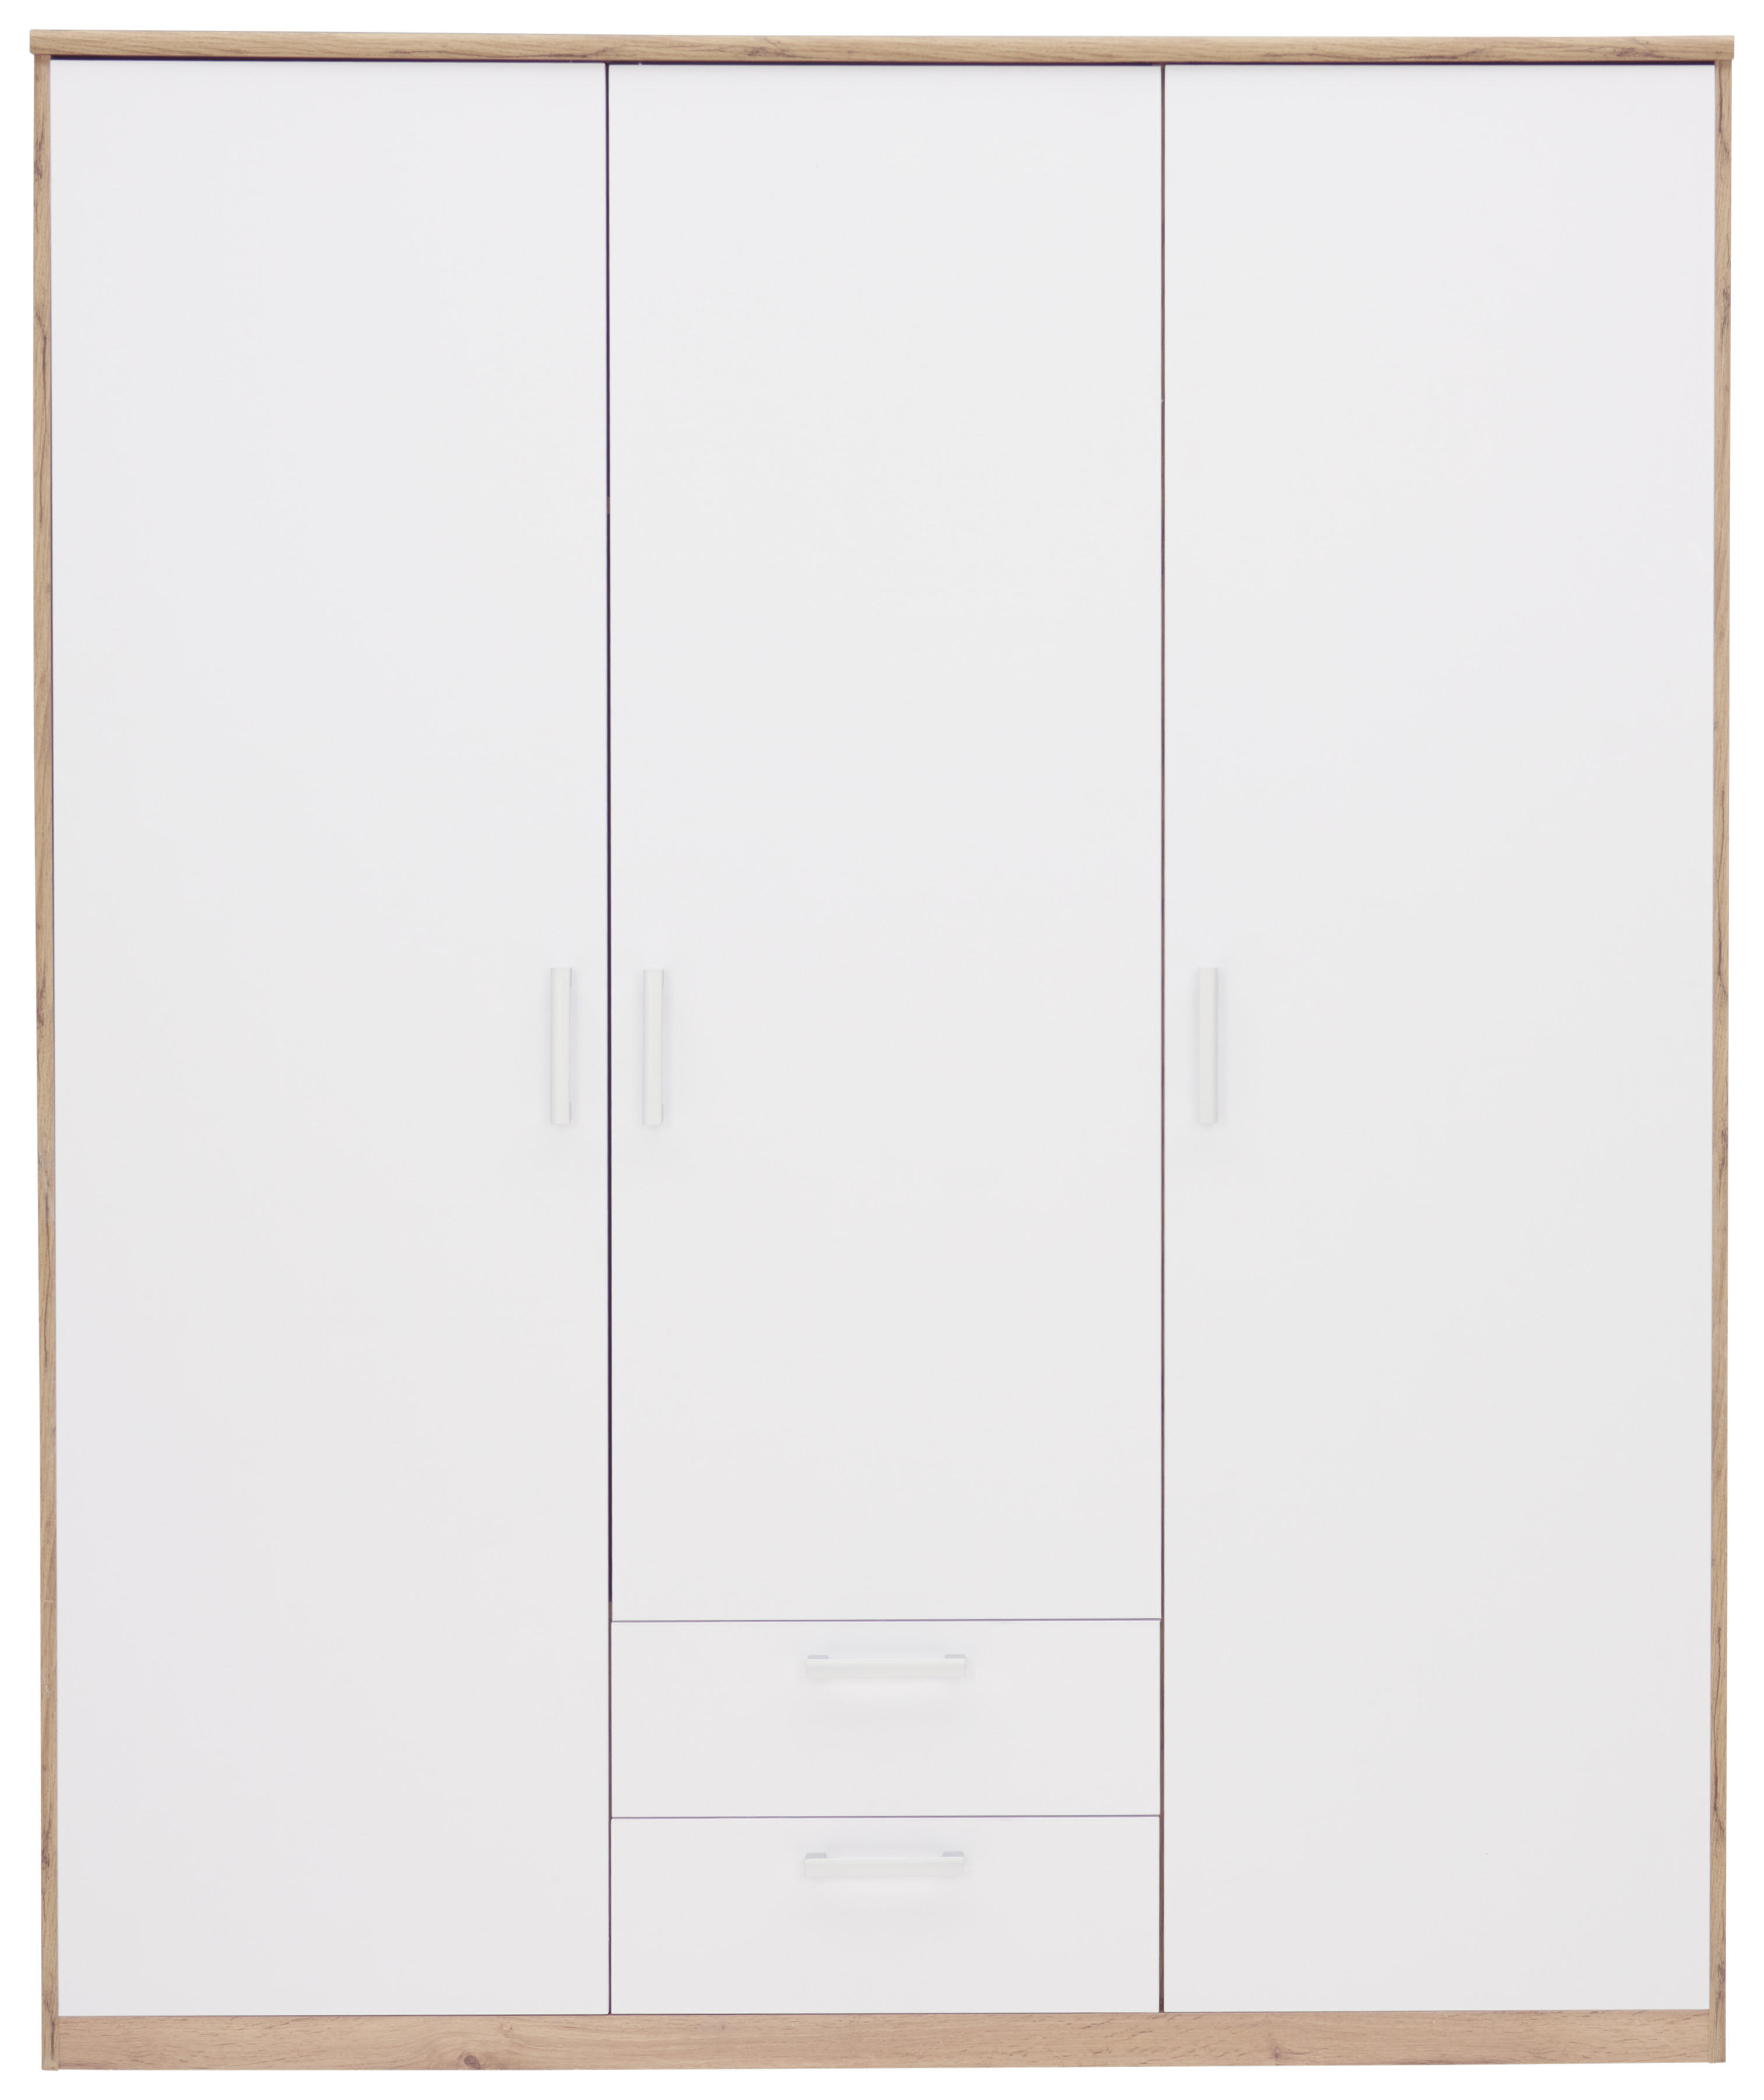 ŠATNÍ SKŘÍŇ, bílá, barvy dubu, 157/194/54 cm - bílá/barvy stříbra, Konvenční, kompozitní dřevo/plast (157/194/54cm) - Xora